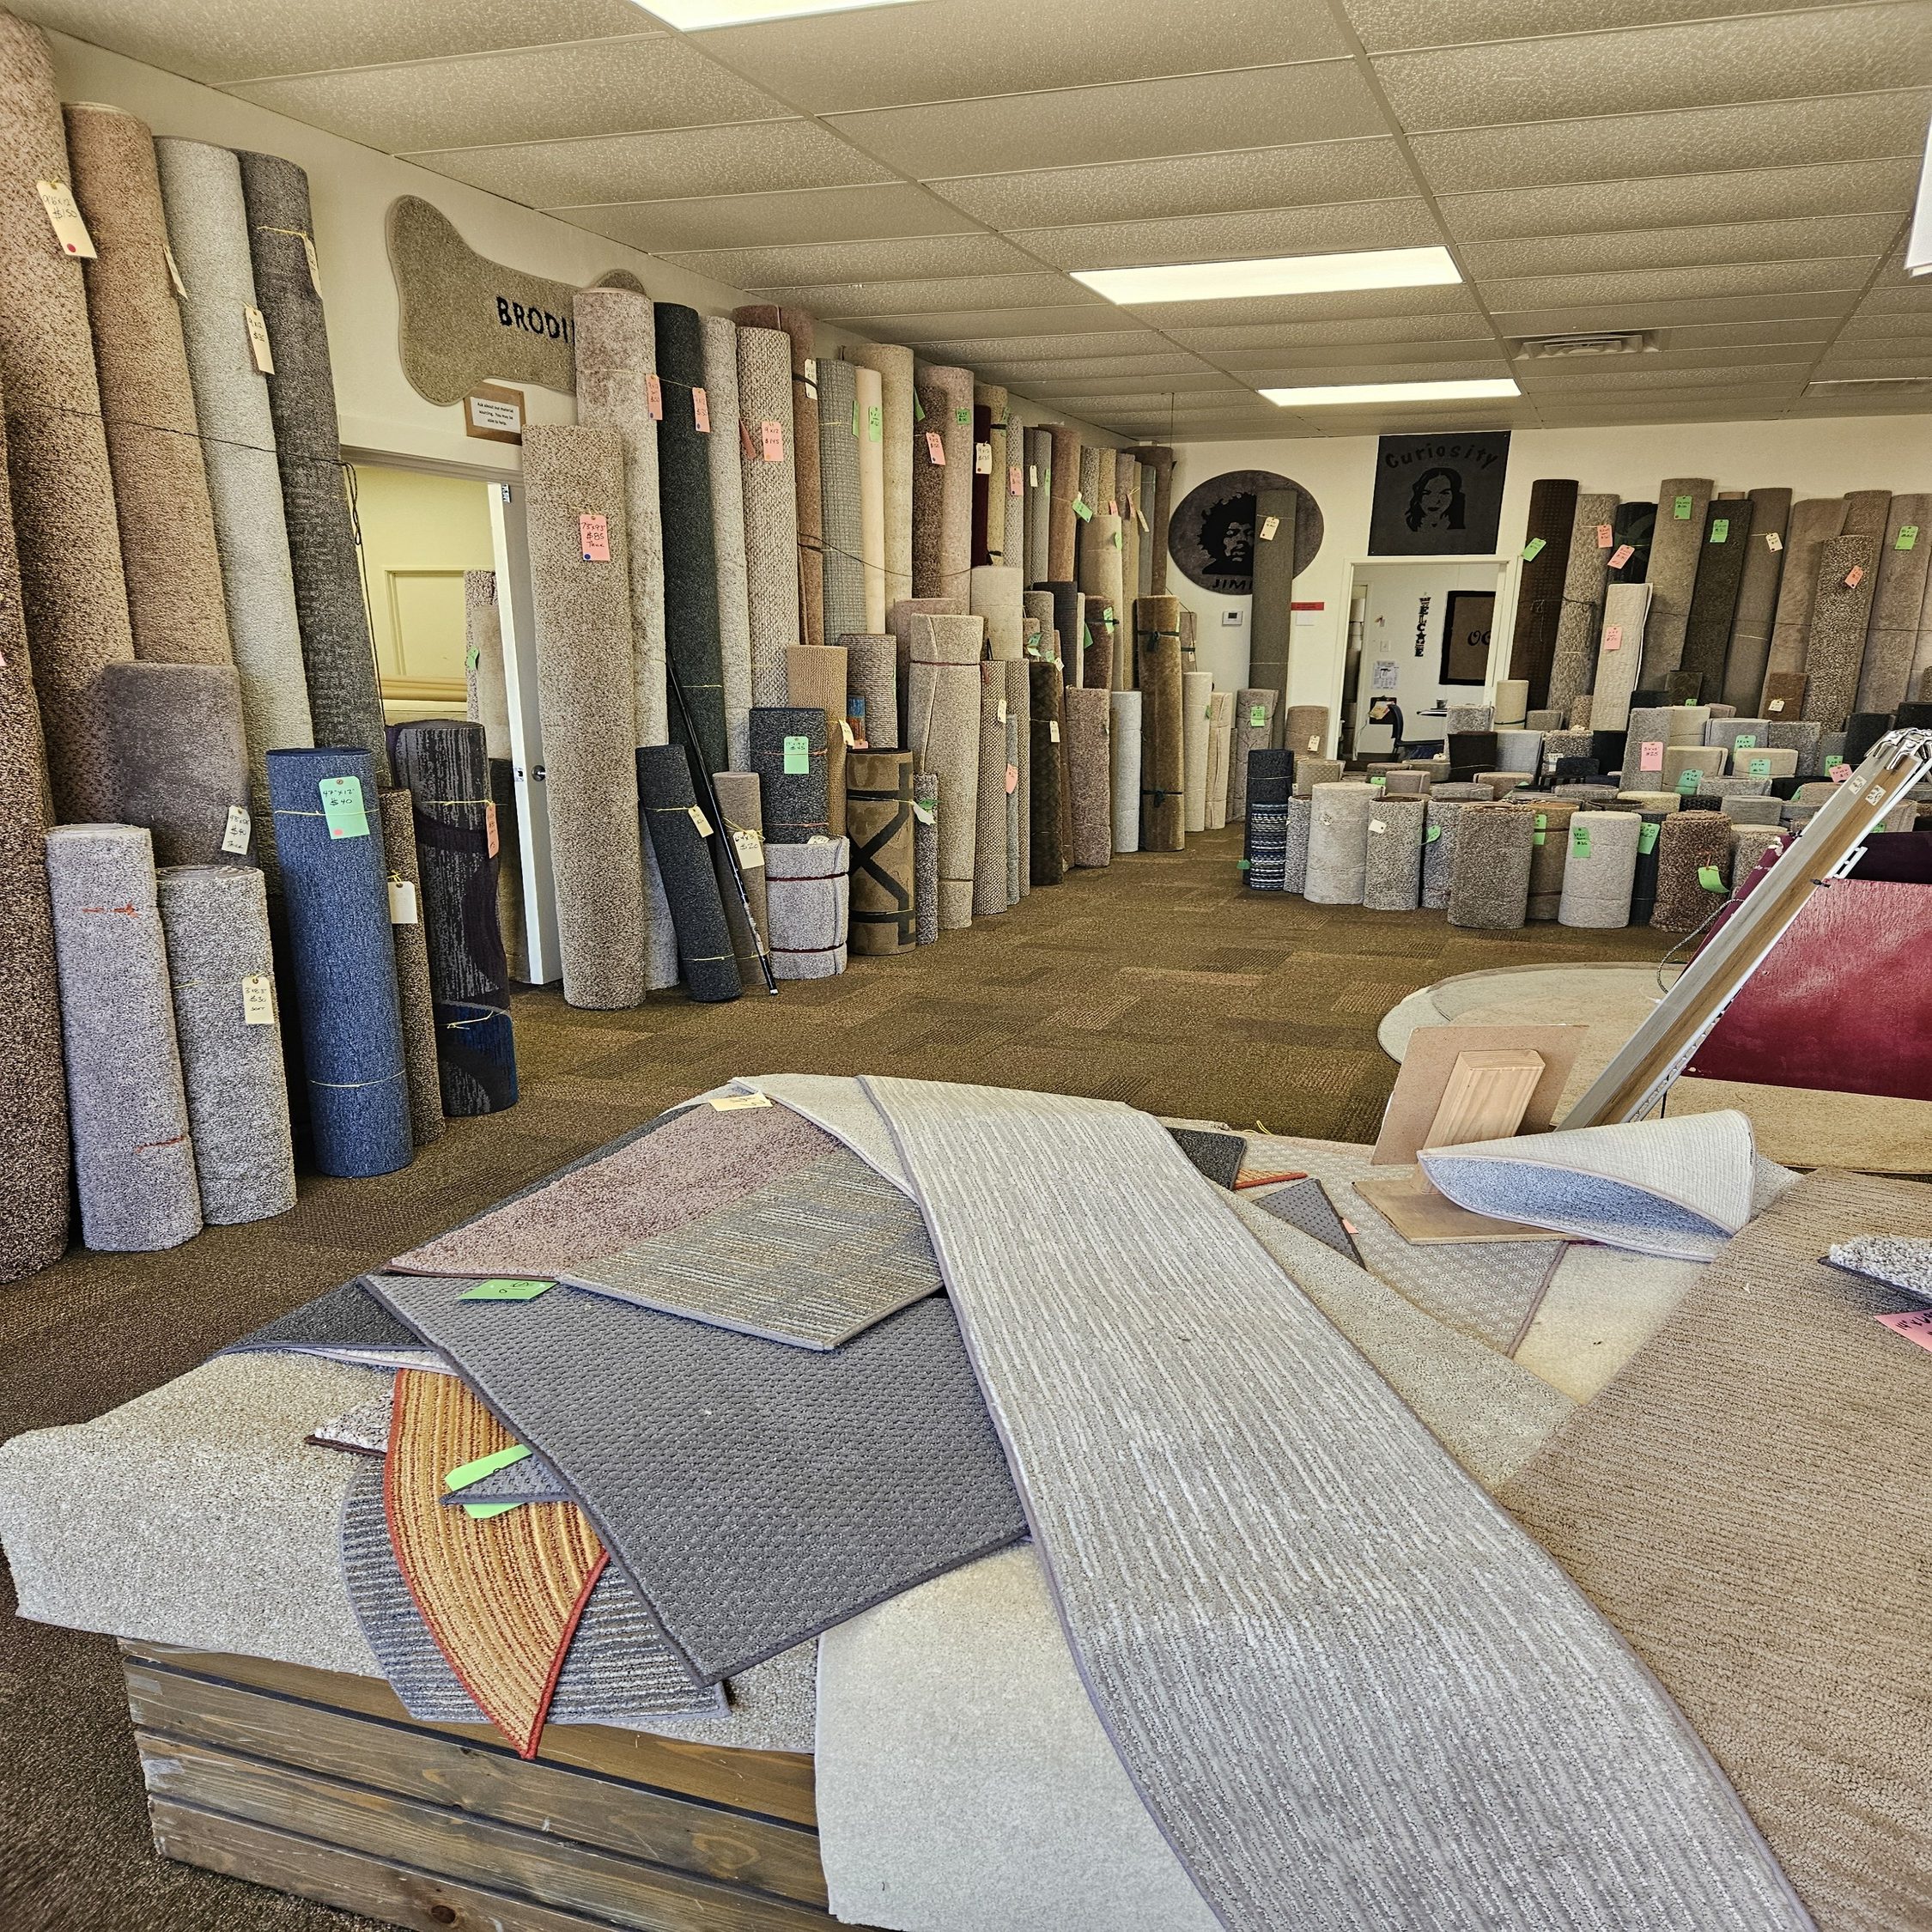 OC Rug stocked carpet showroom